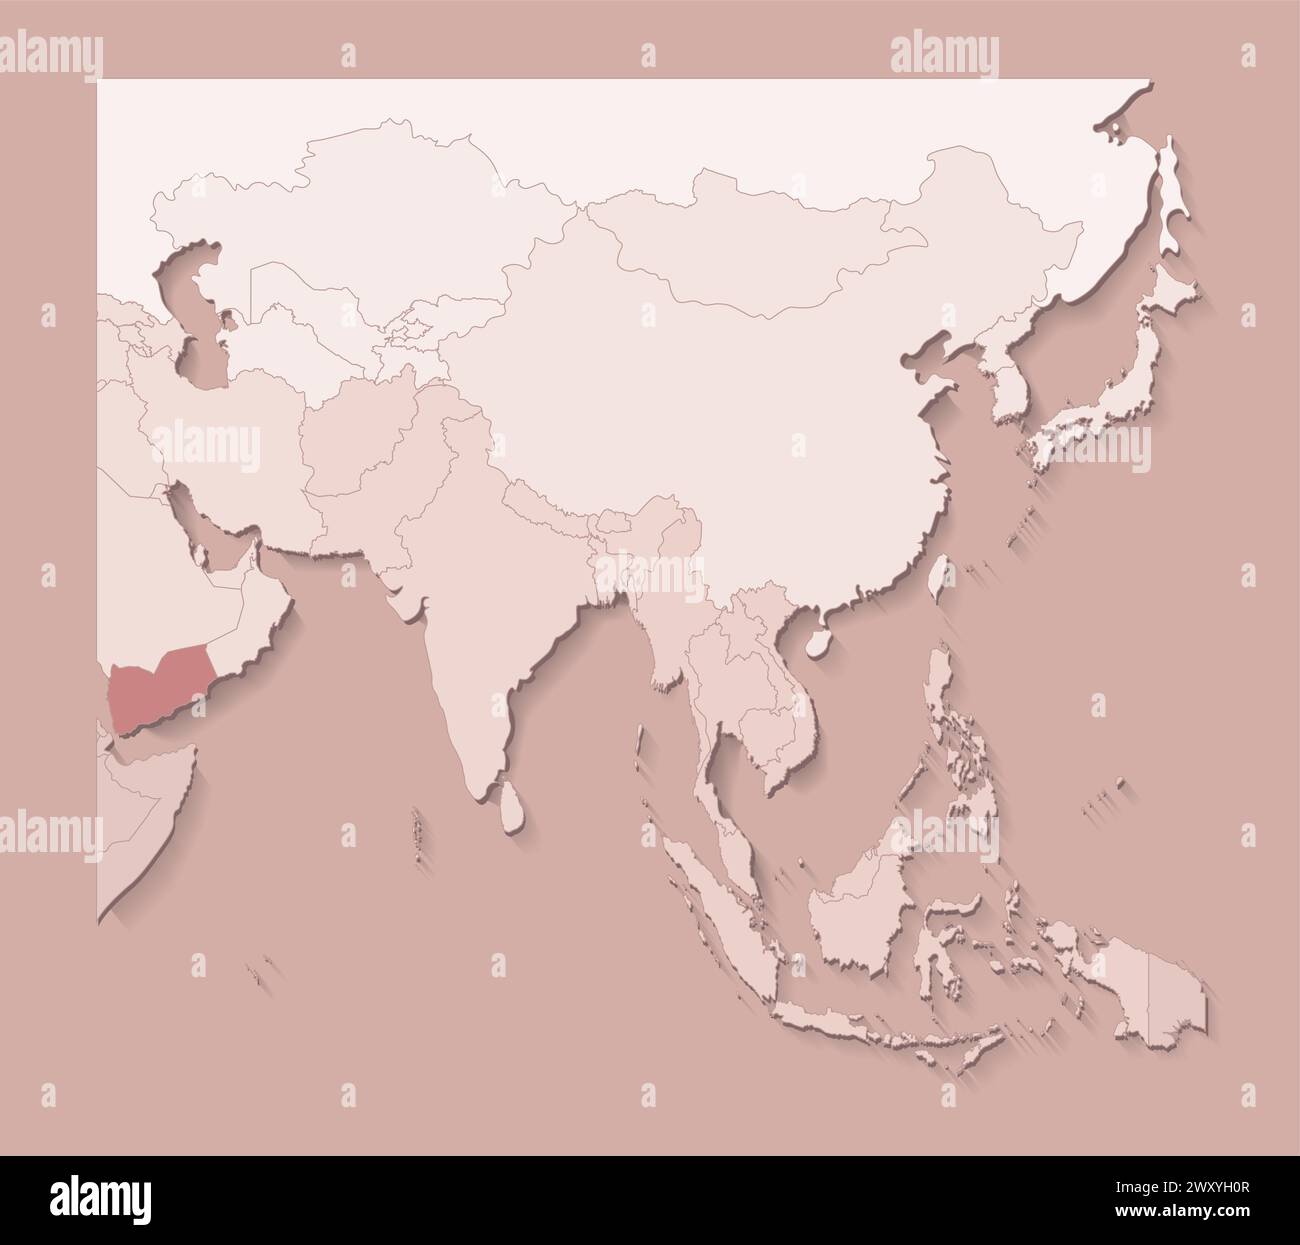 Illustrazione vettoriale con aree asiatiche con confini di stati e paese contrassegnato Yemen. Mappa politica di colore marrone con regioni. Sfondo beige Illustrazione Vettoriale